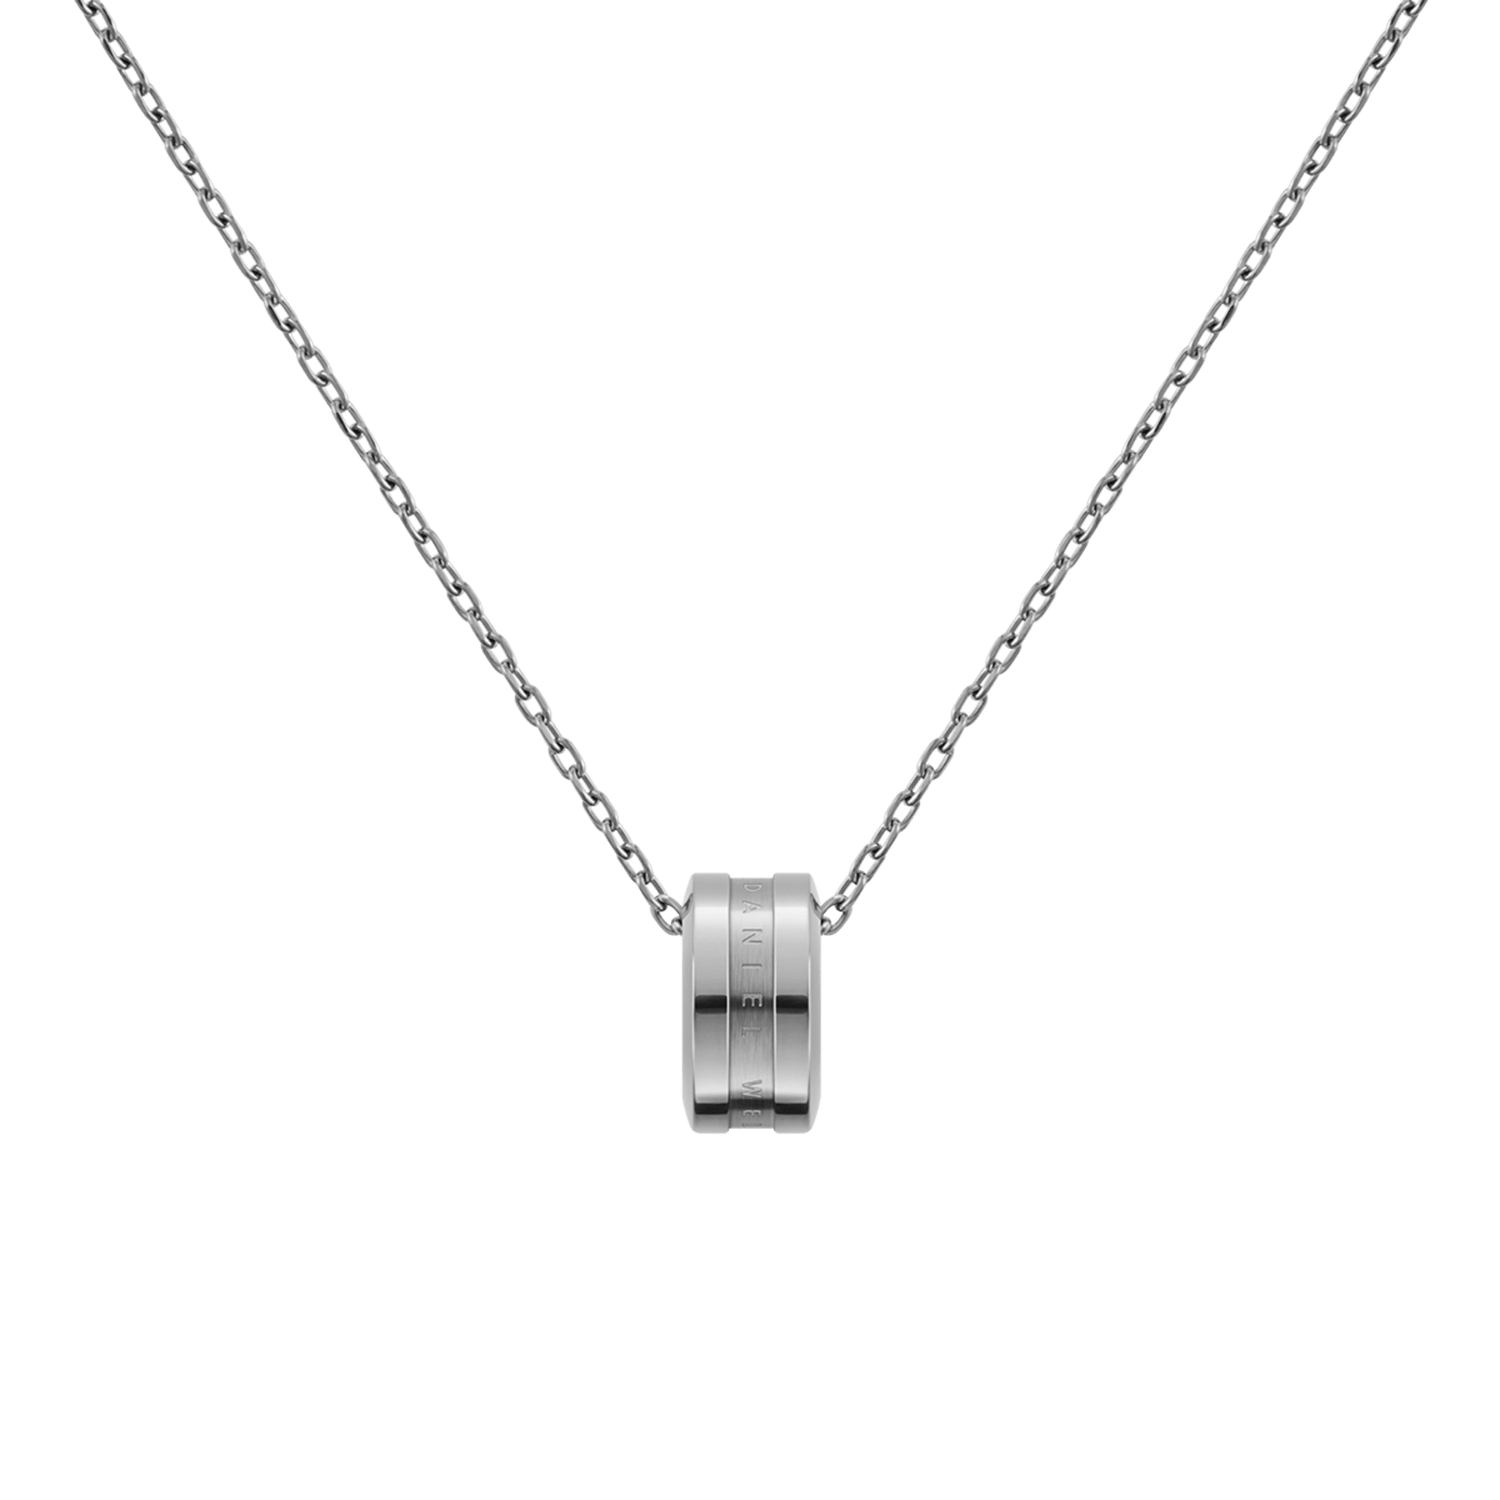 Elan Necklace Silver